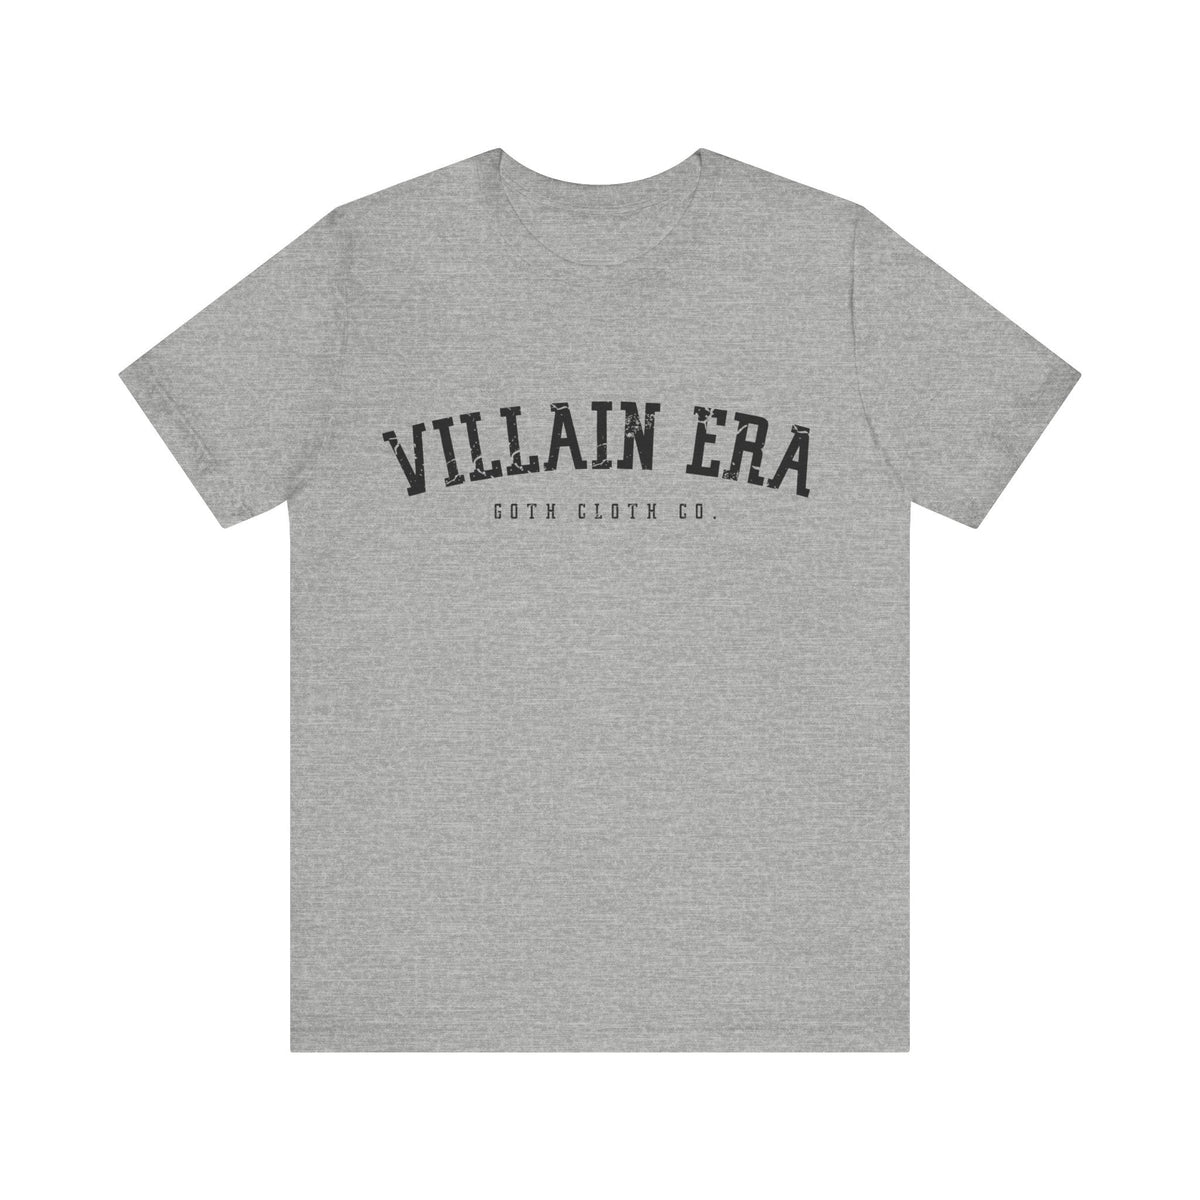 Villain Era Short Sleeve Tee - Goth Cloth Co.T - Shirt27318832349886794434